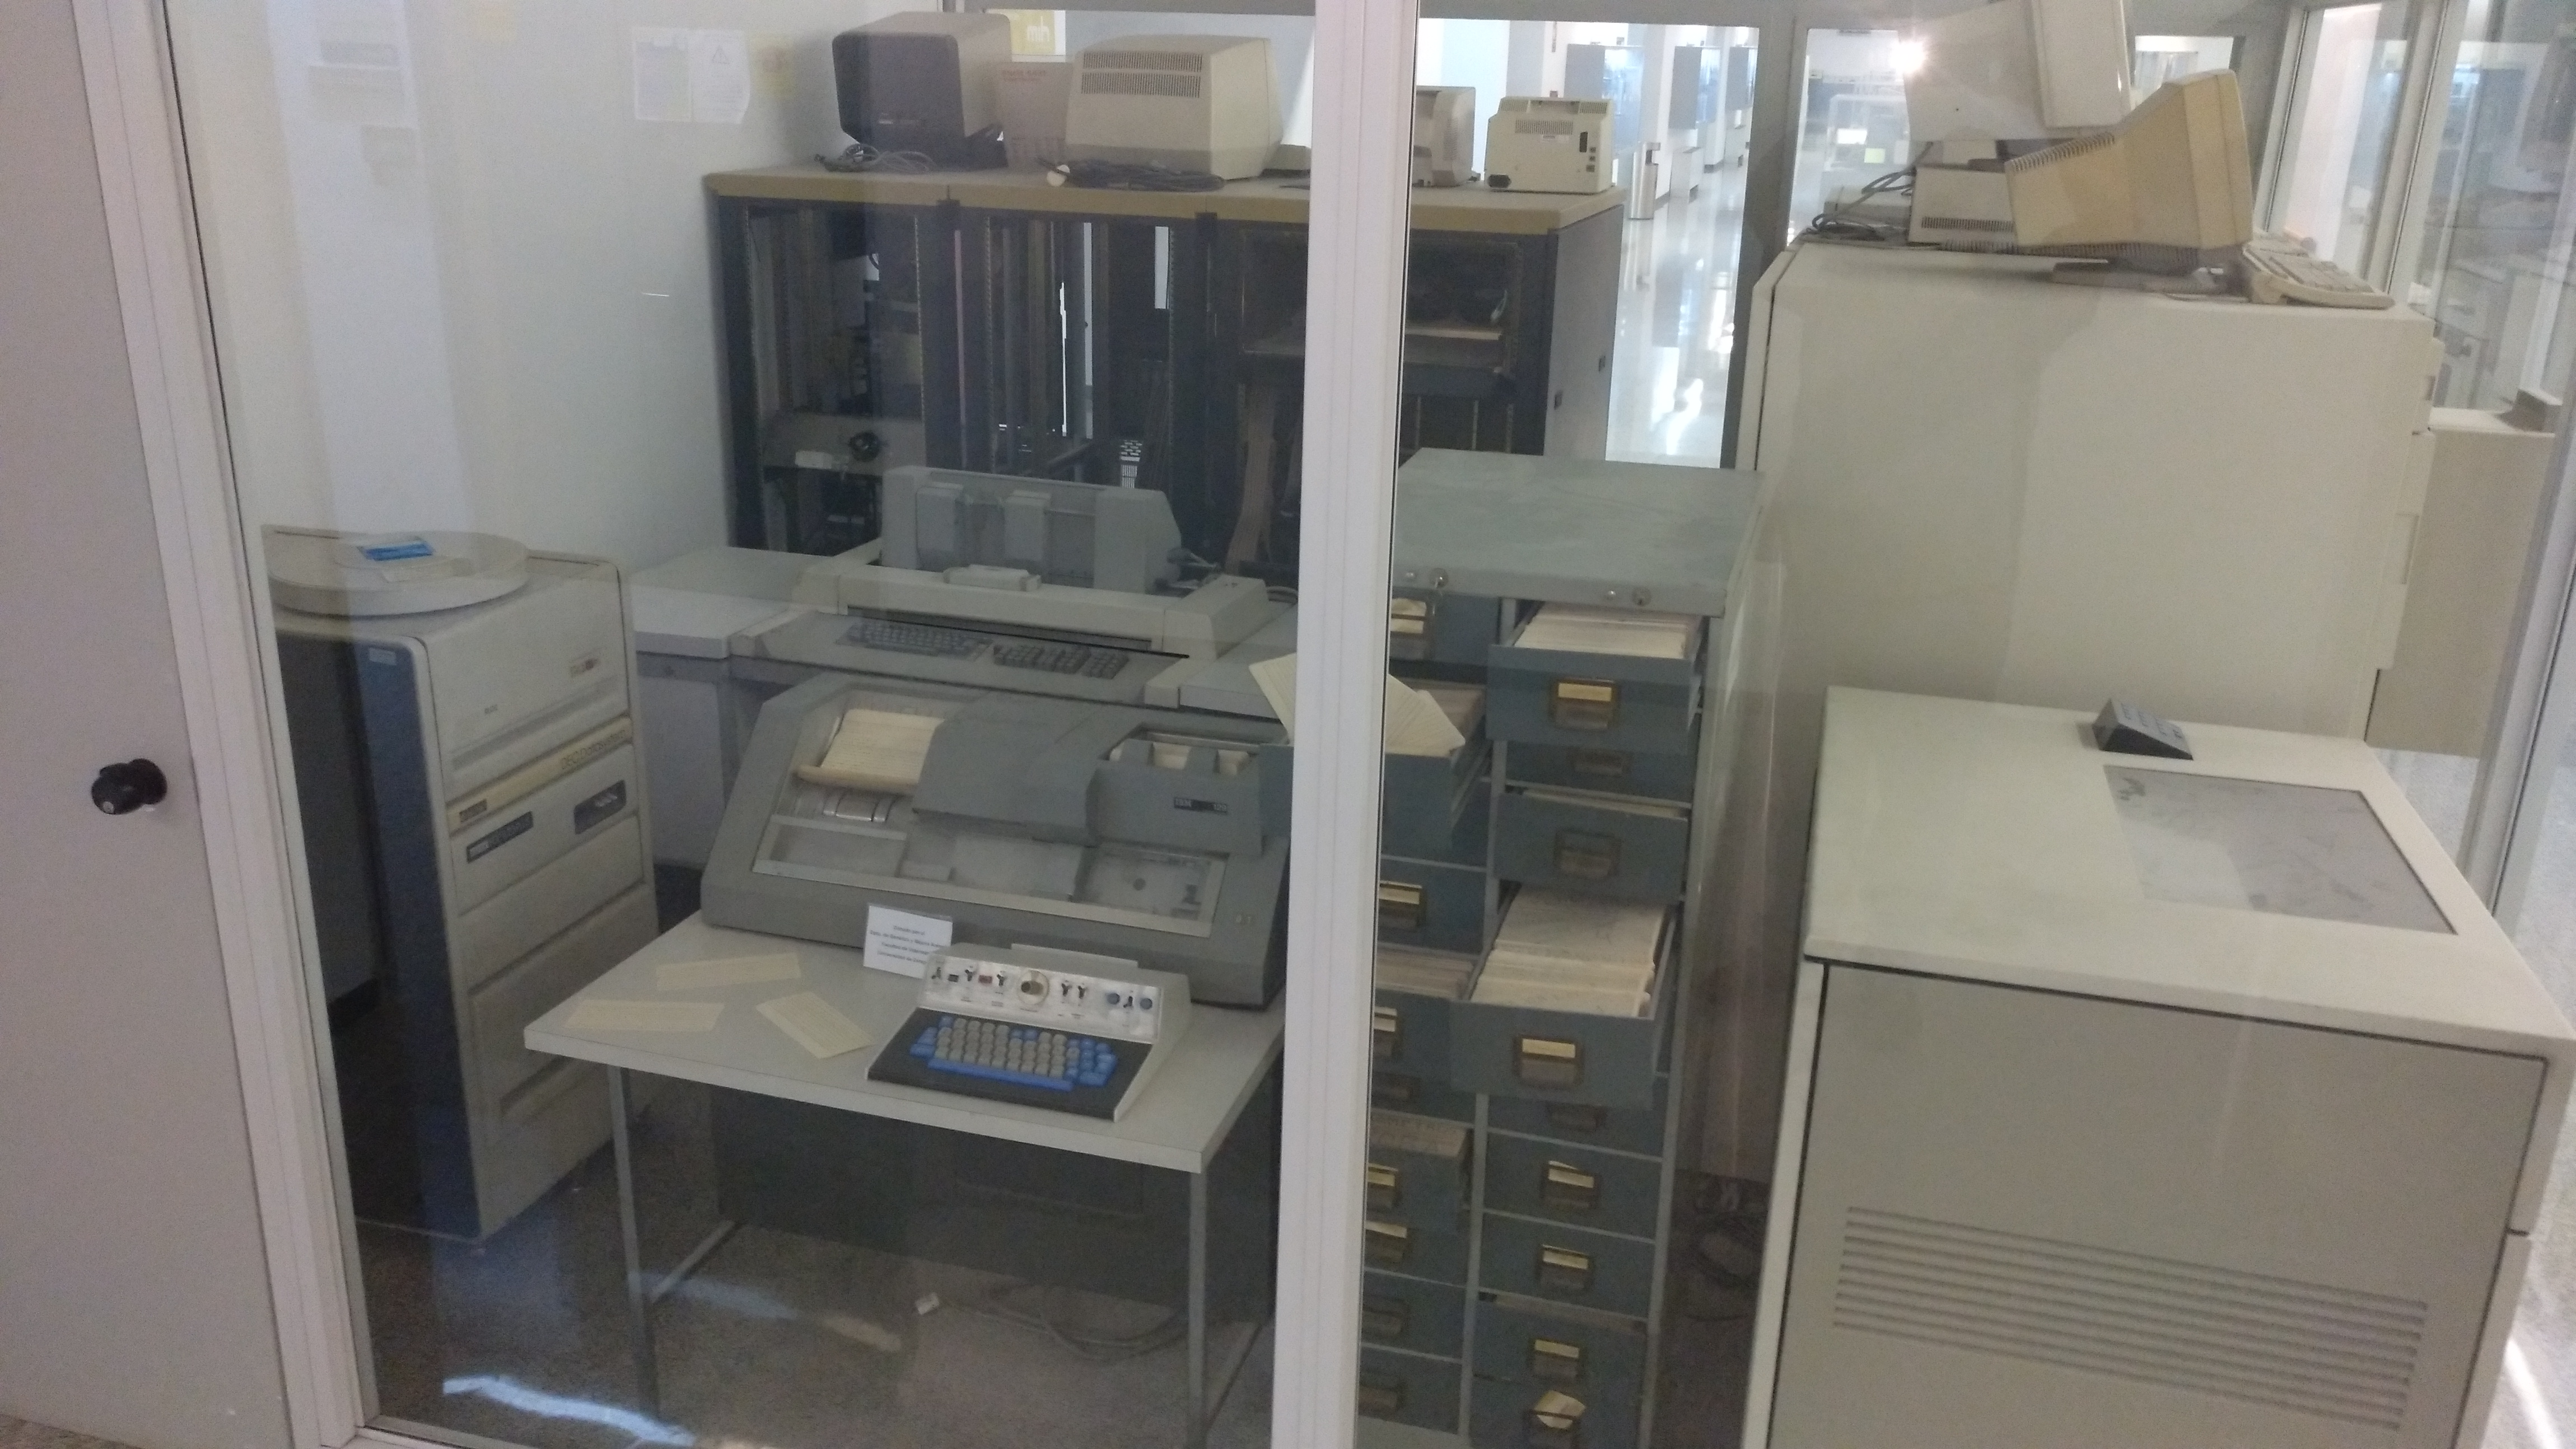 PDP-11/23, perforadora/verificadora de tarjetas IBM 129, y armario de tarjetas perforadas